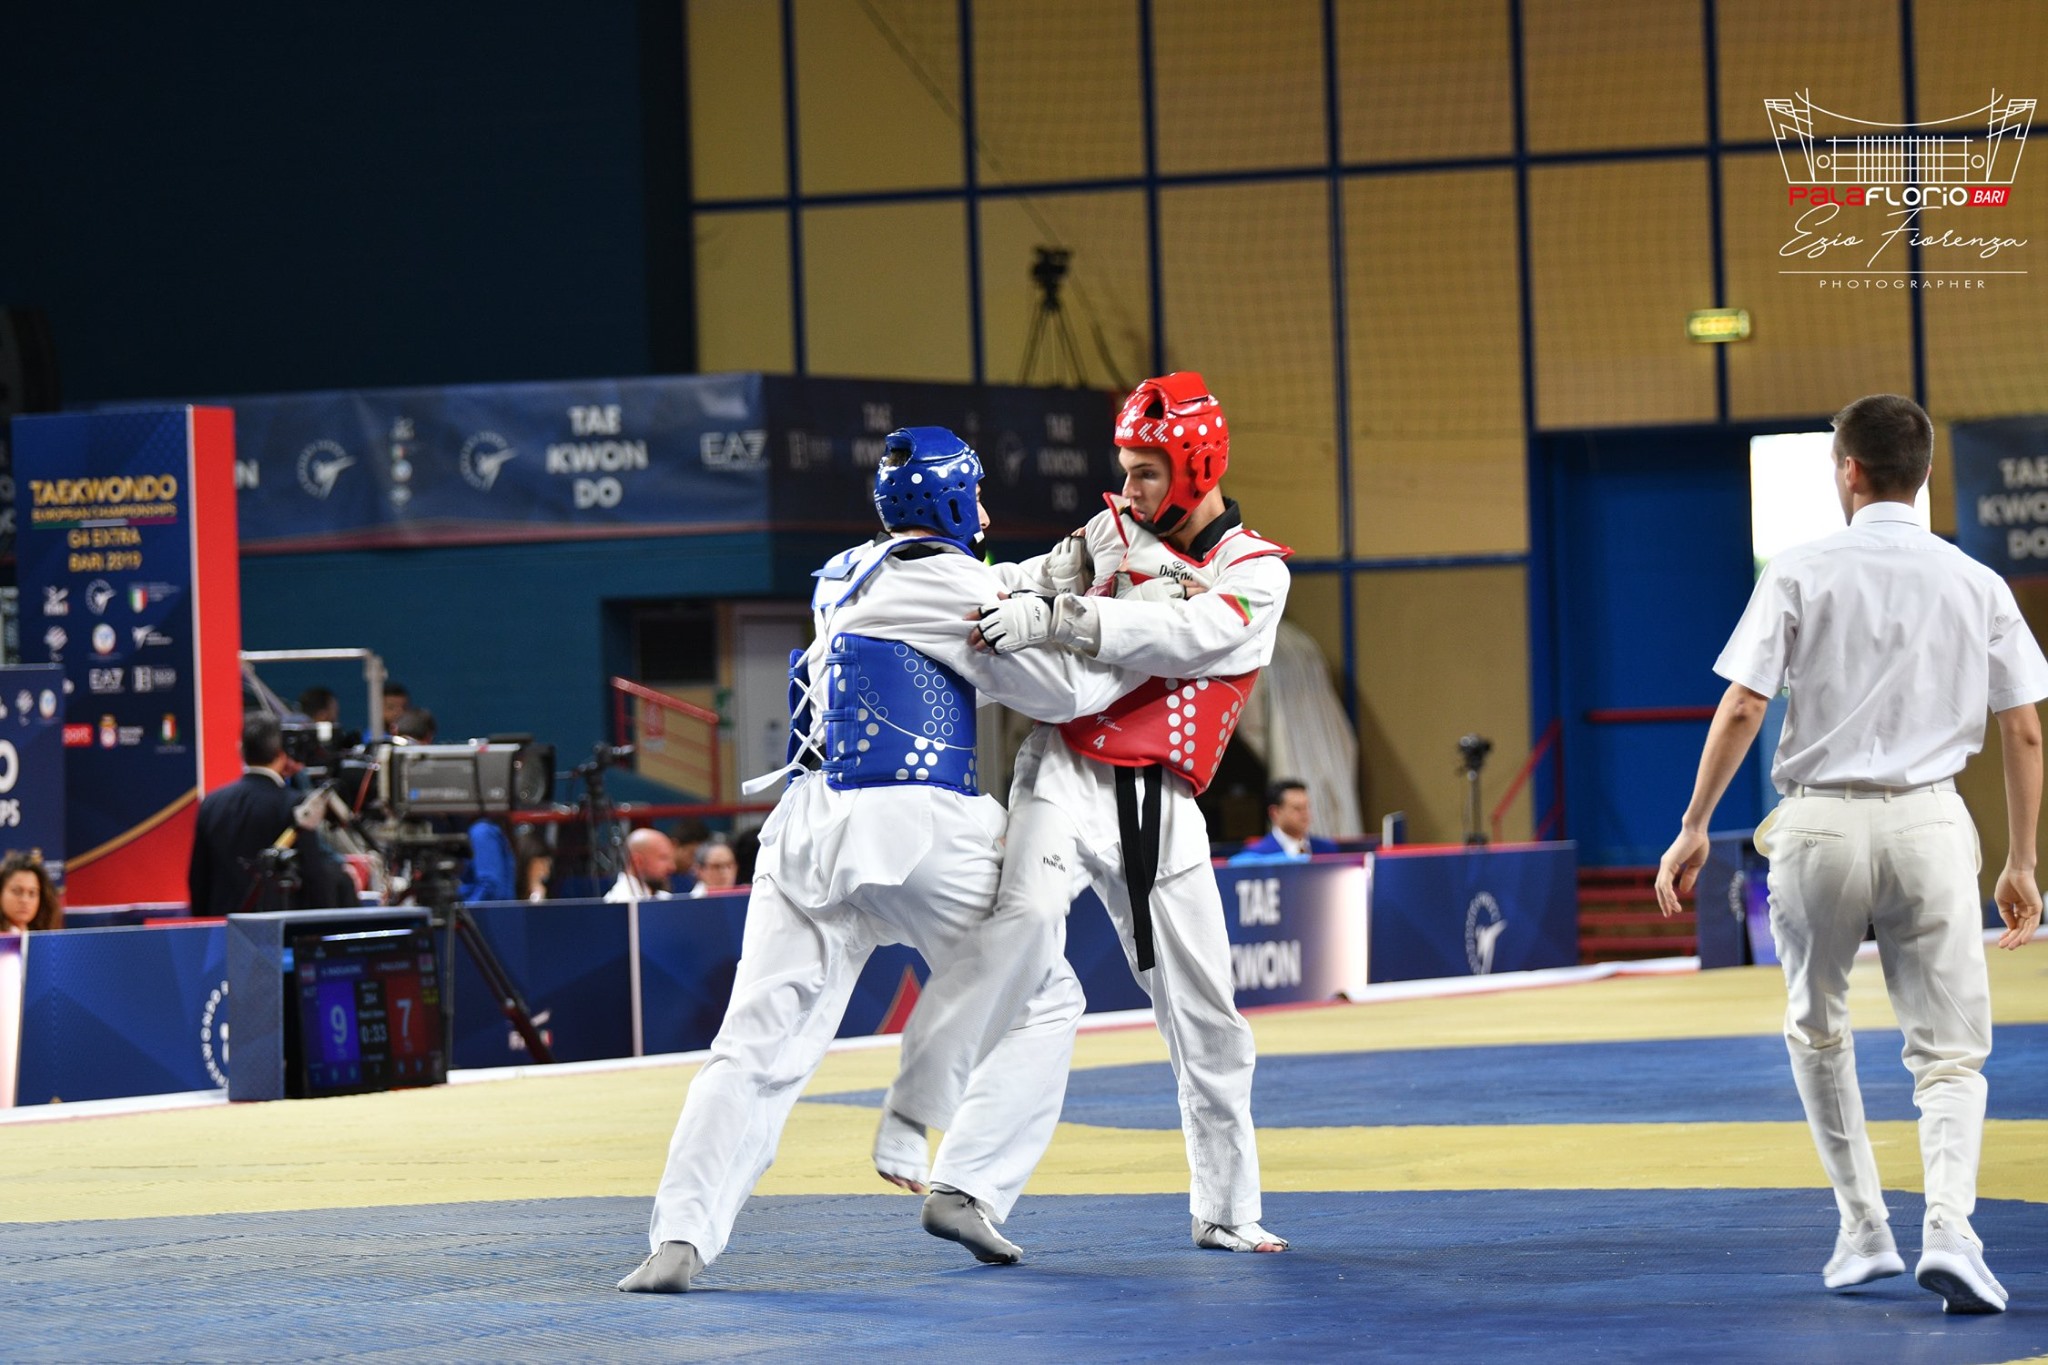 Combattimenti mozzafiato e agonismo puro al Palaflorio con i campionati interregionali Puglia 2023 di Taekwondo